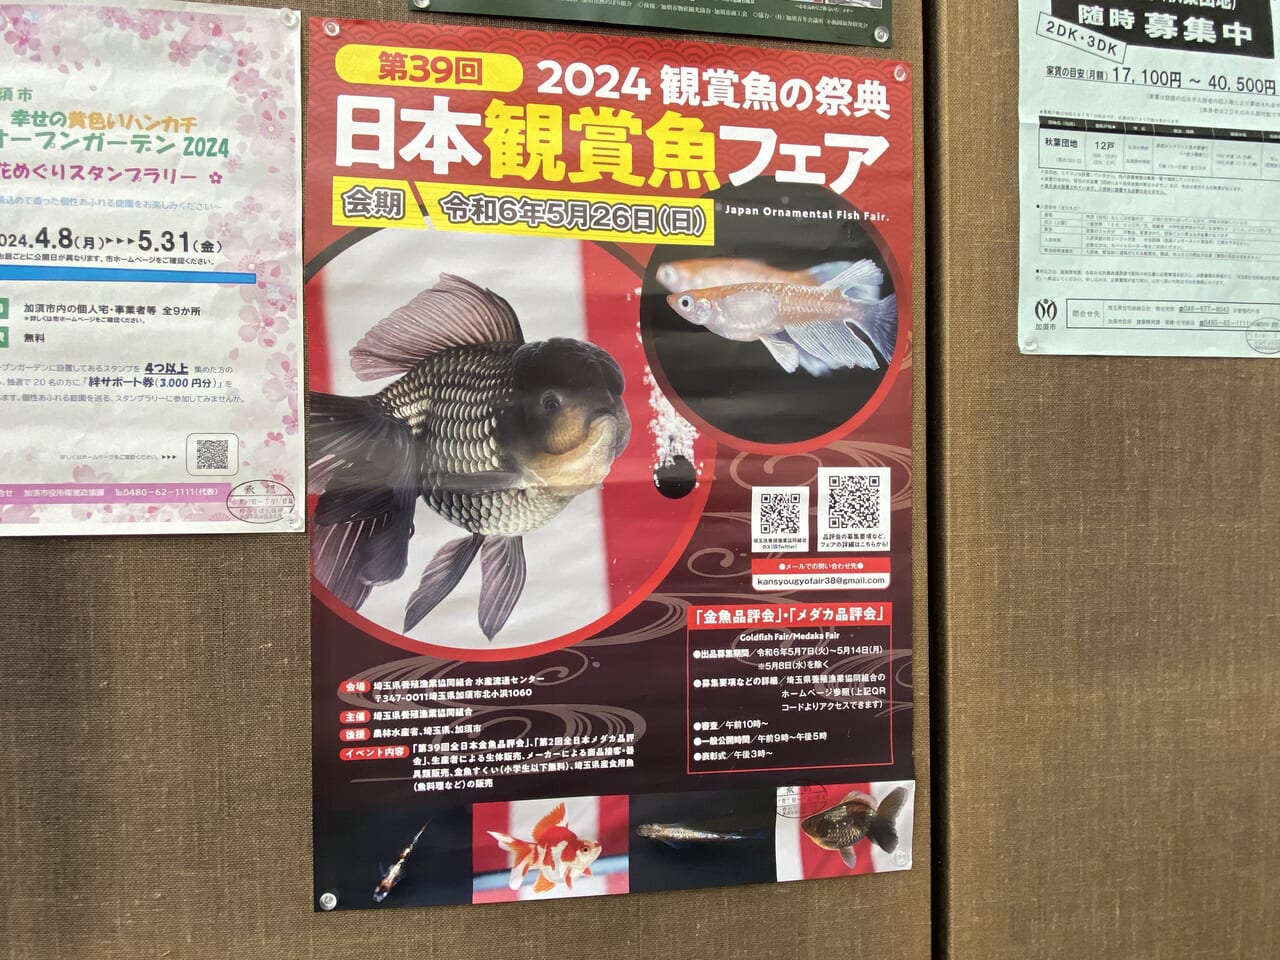 日本観賞魚フェアのポスター